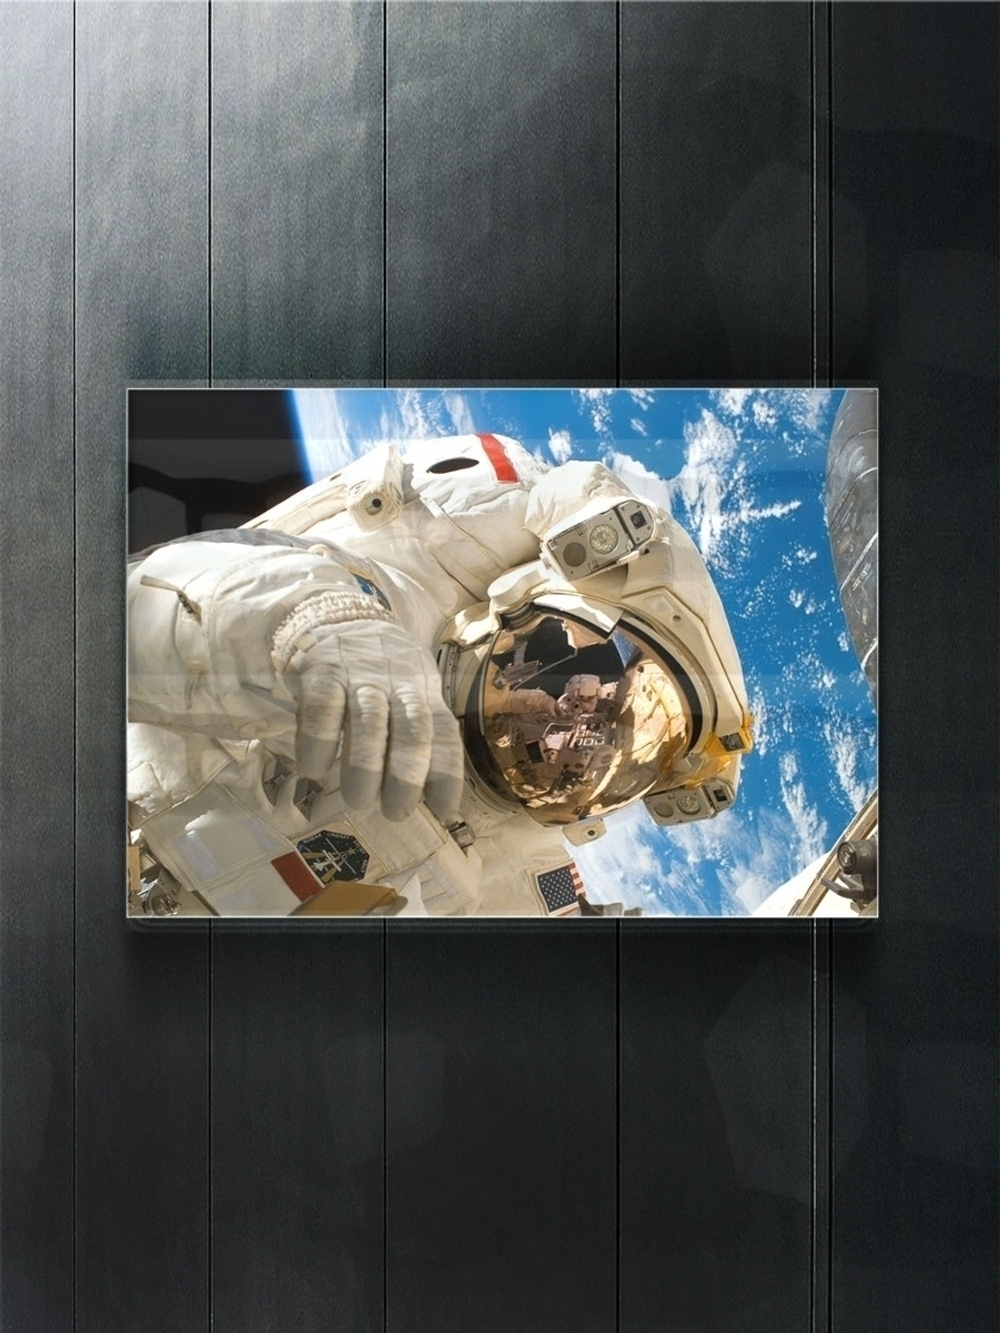 Модульная стеклянная интерьерная картина /Фотокартина на стекле /Космонавт, 28x40 см. Декор для дома, подарок